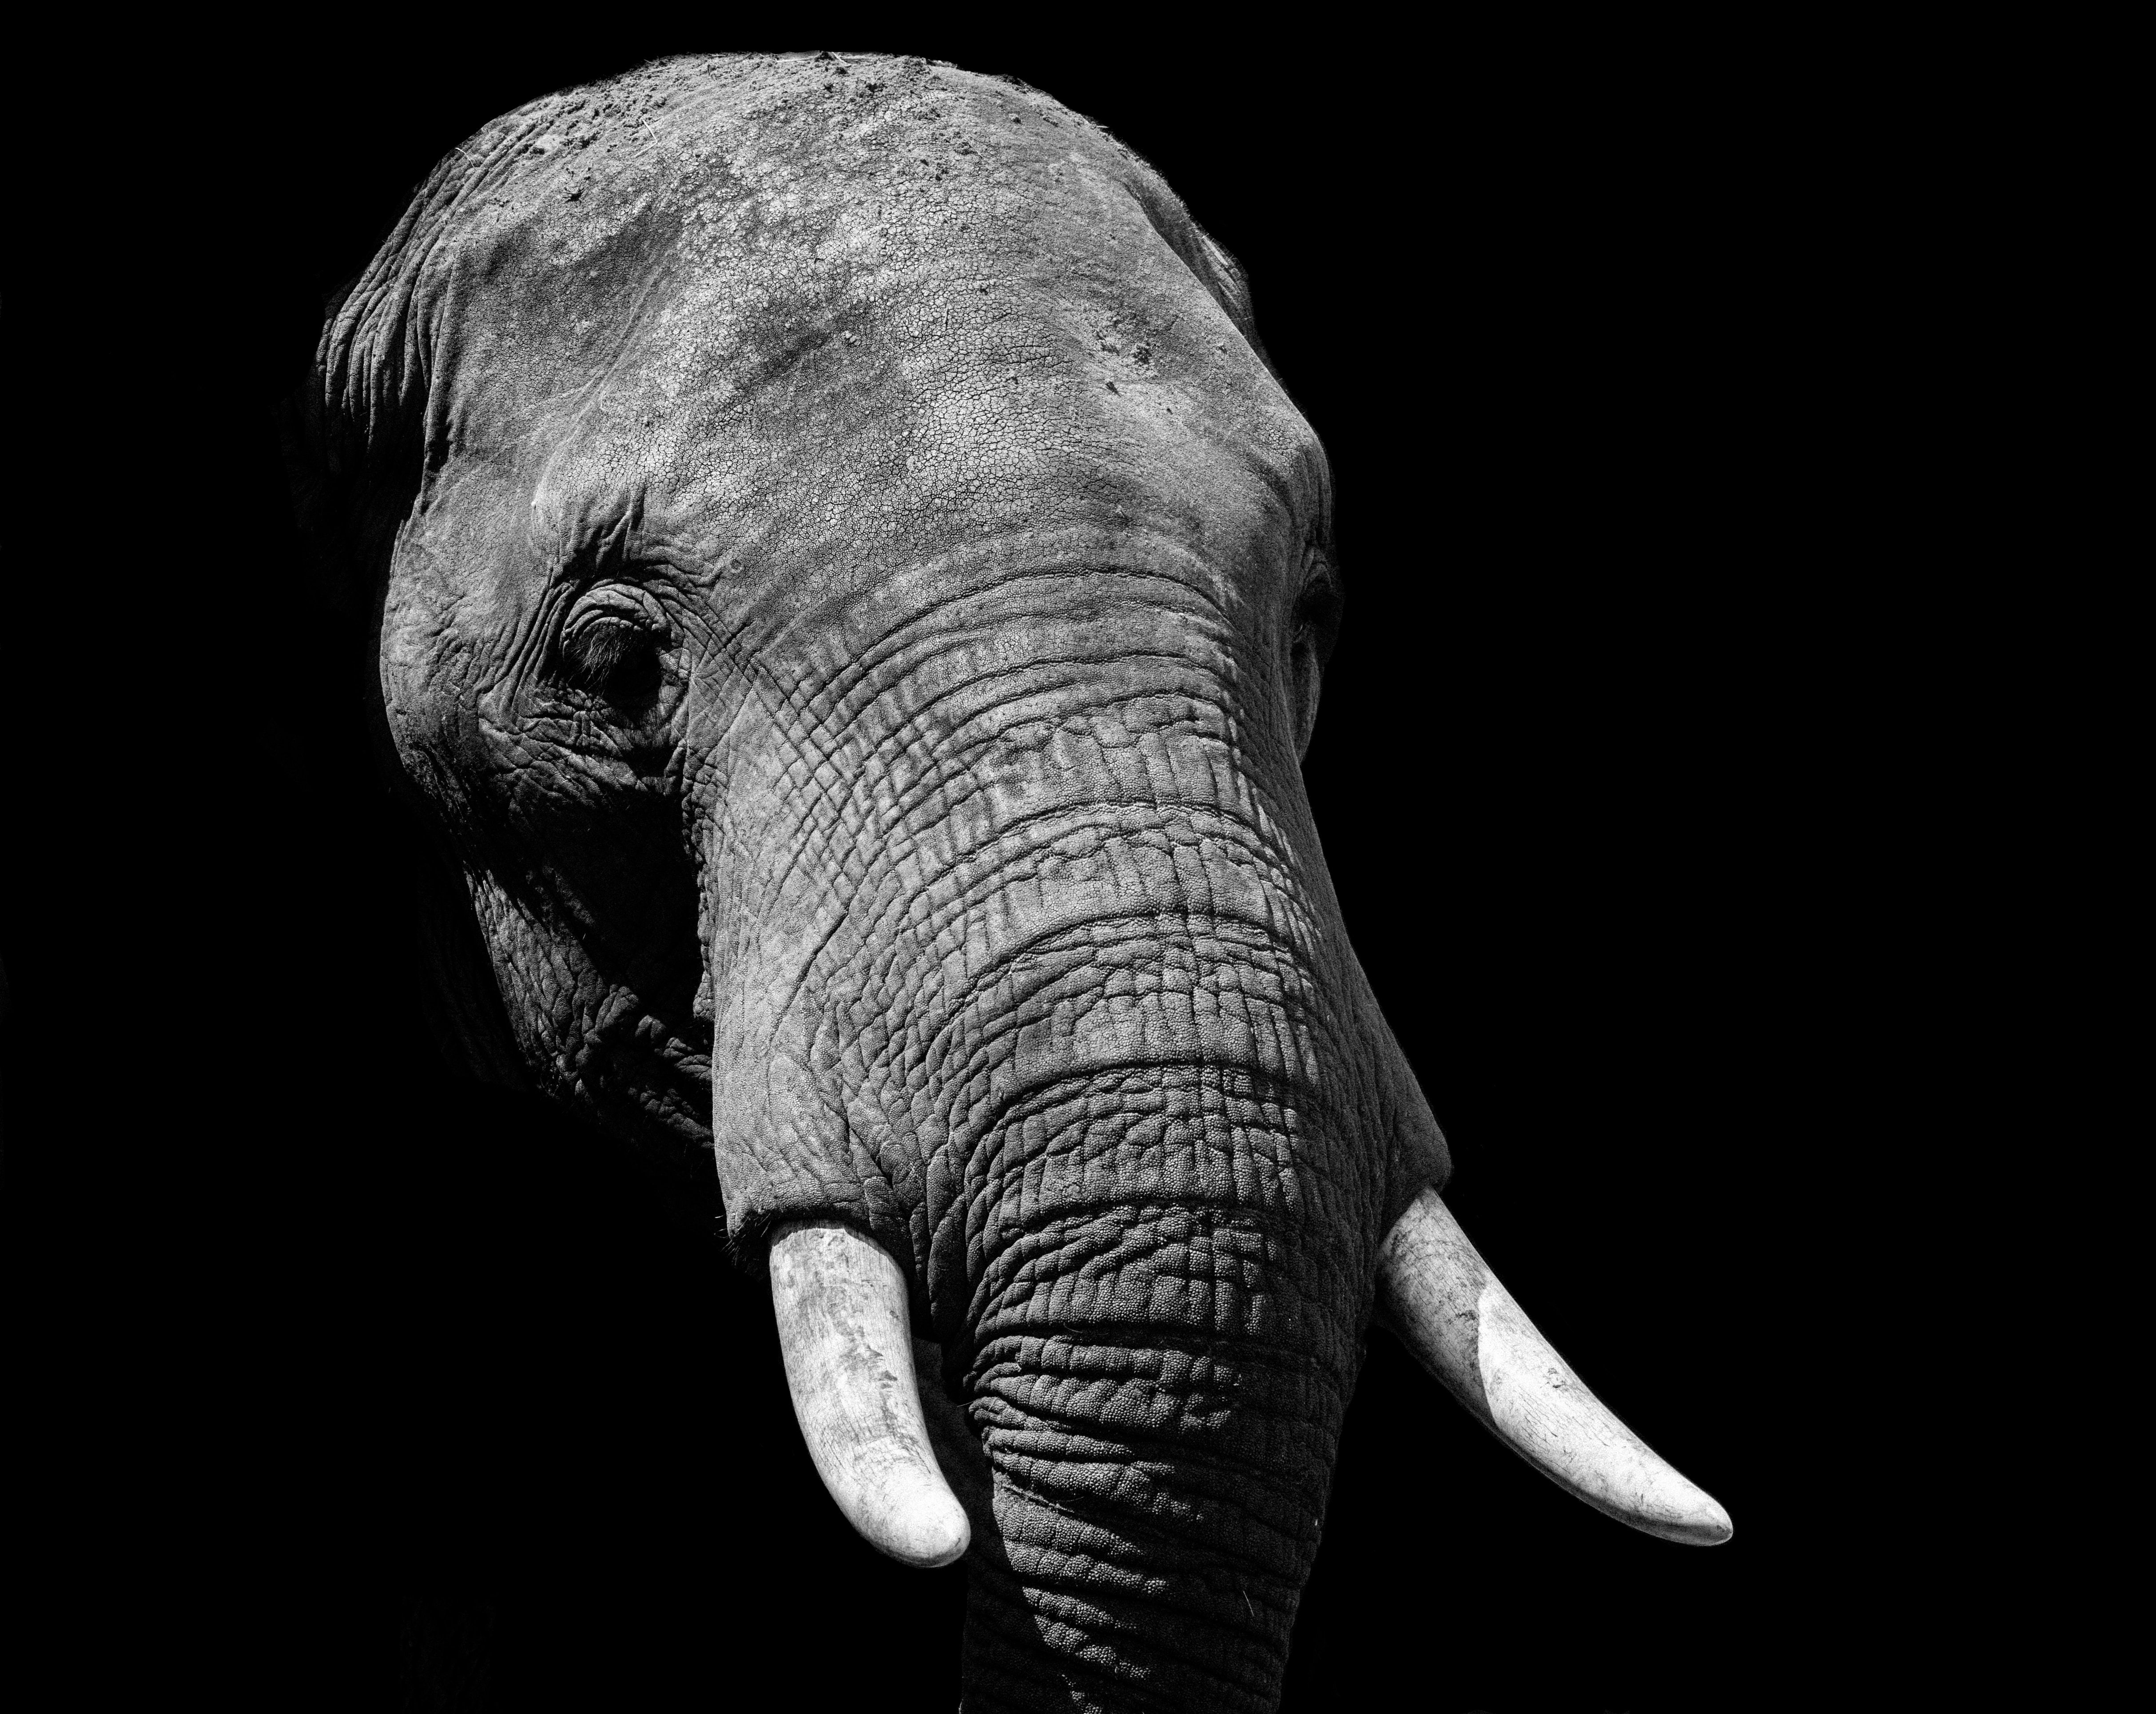 "Самая печальная слониха" на Земле умерла в неволе и в одиночестве